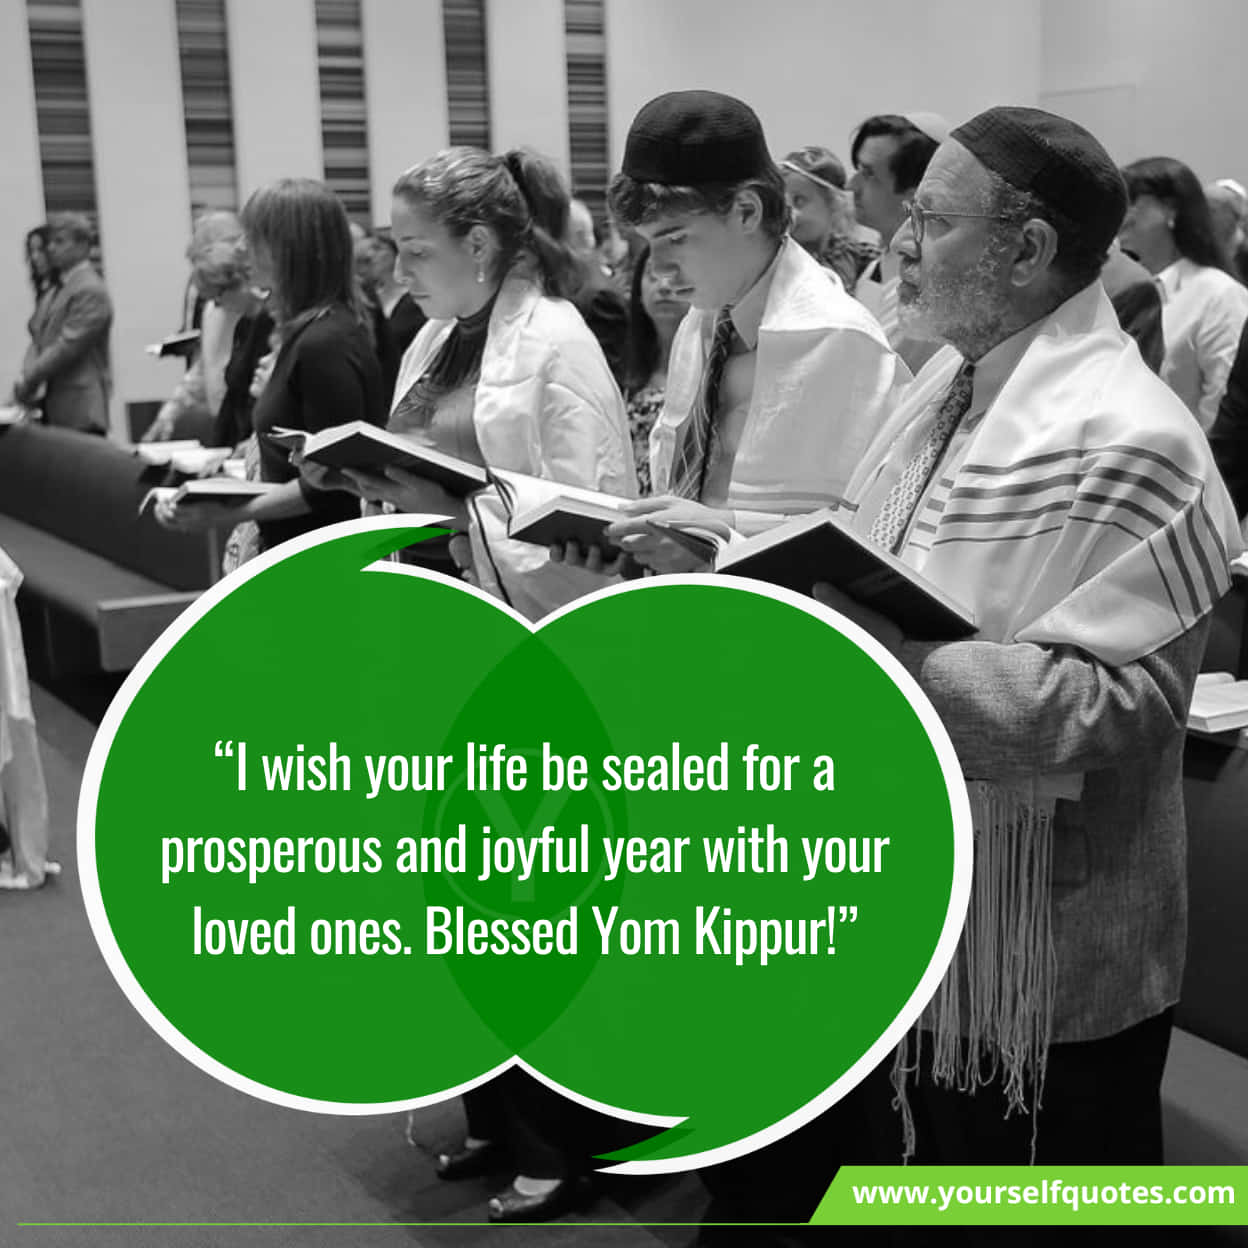 Sayings For Yom Kippur To Share